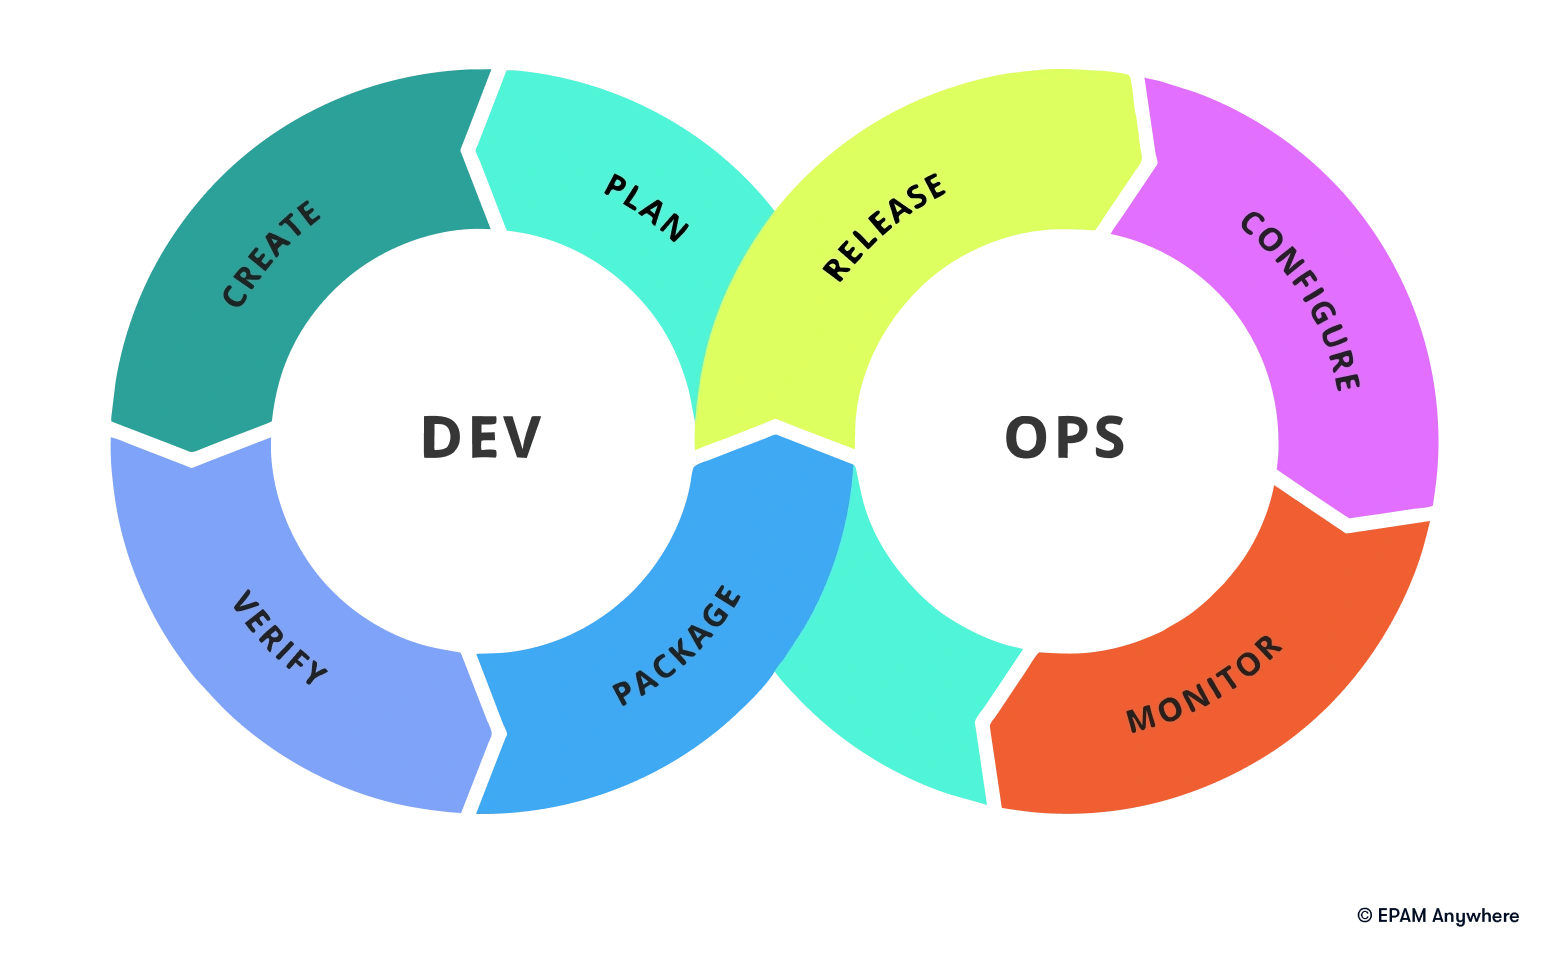 a loop illustrating DevOps phases